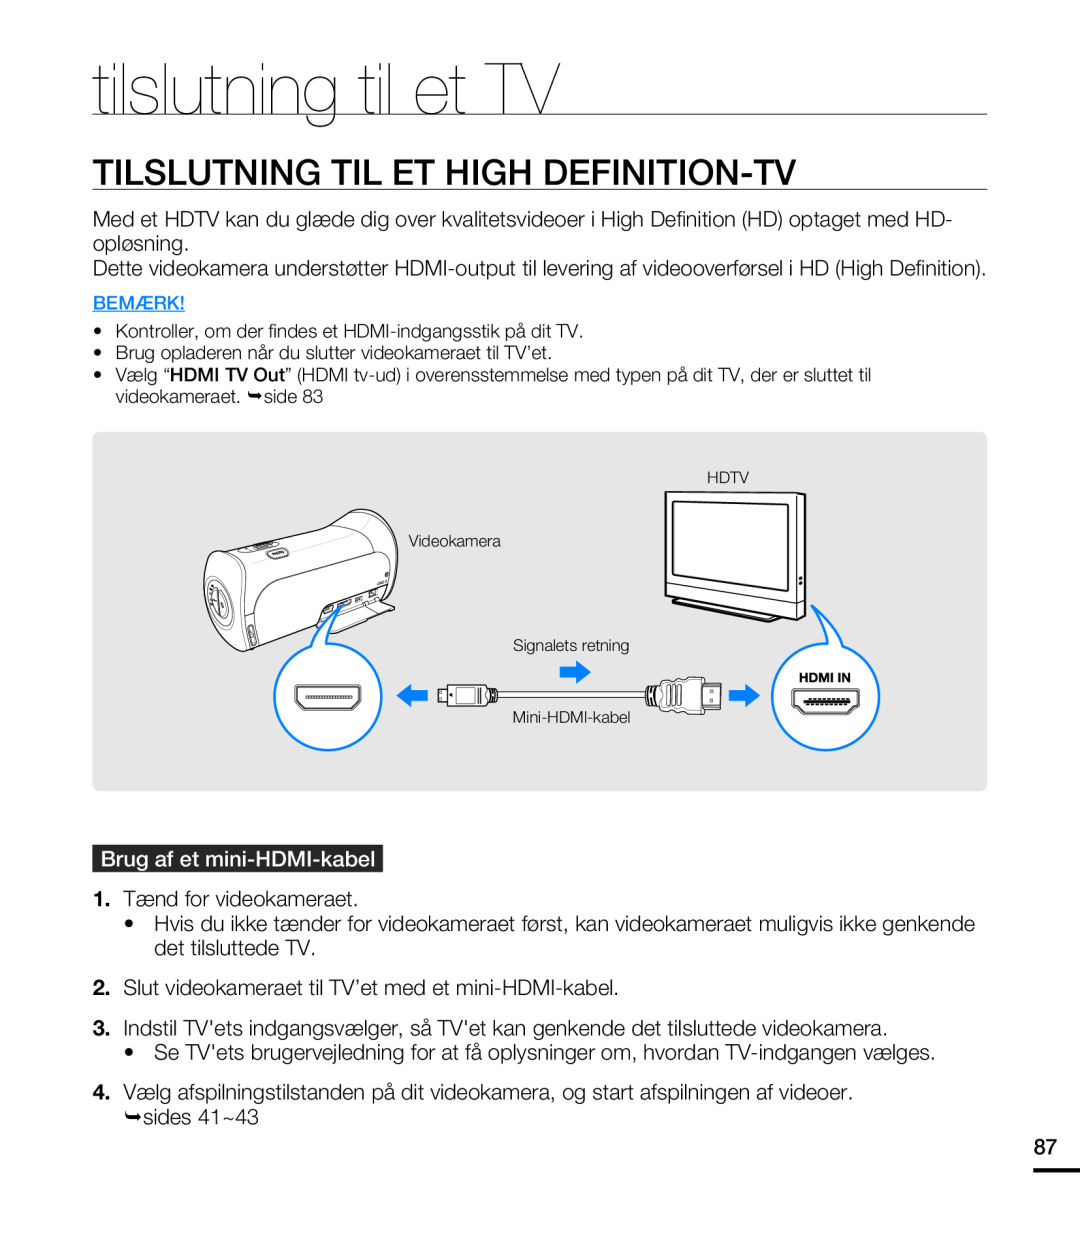 Samsung HMX-T10BP/EDC manual tilslutning til et TV, Tilslutning Til Et High Definition-Tv, Brug af et mini-HDMI-kabel 